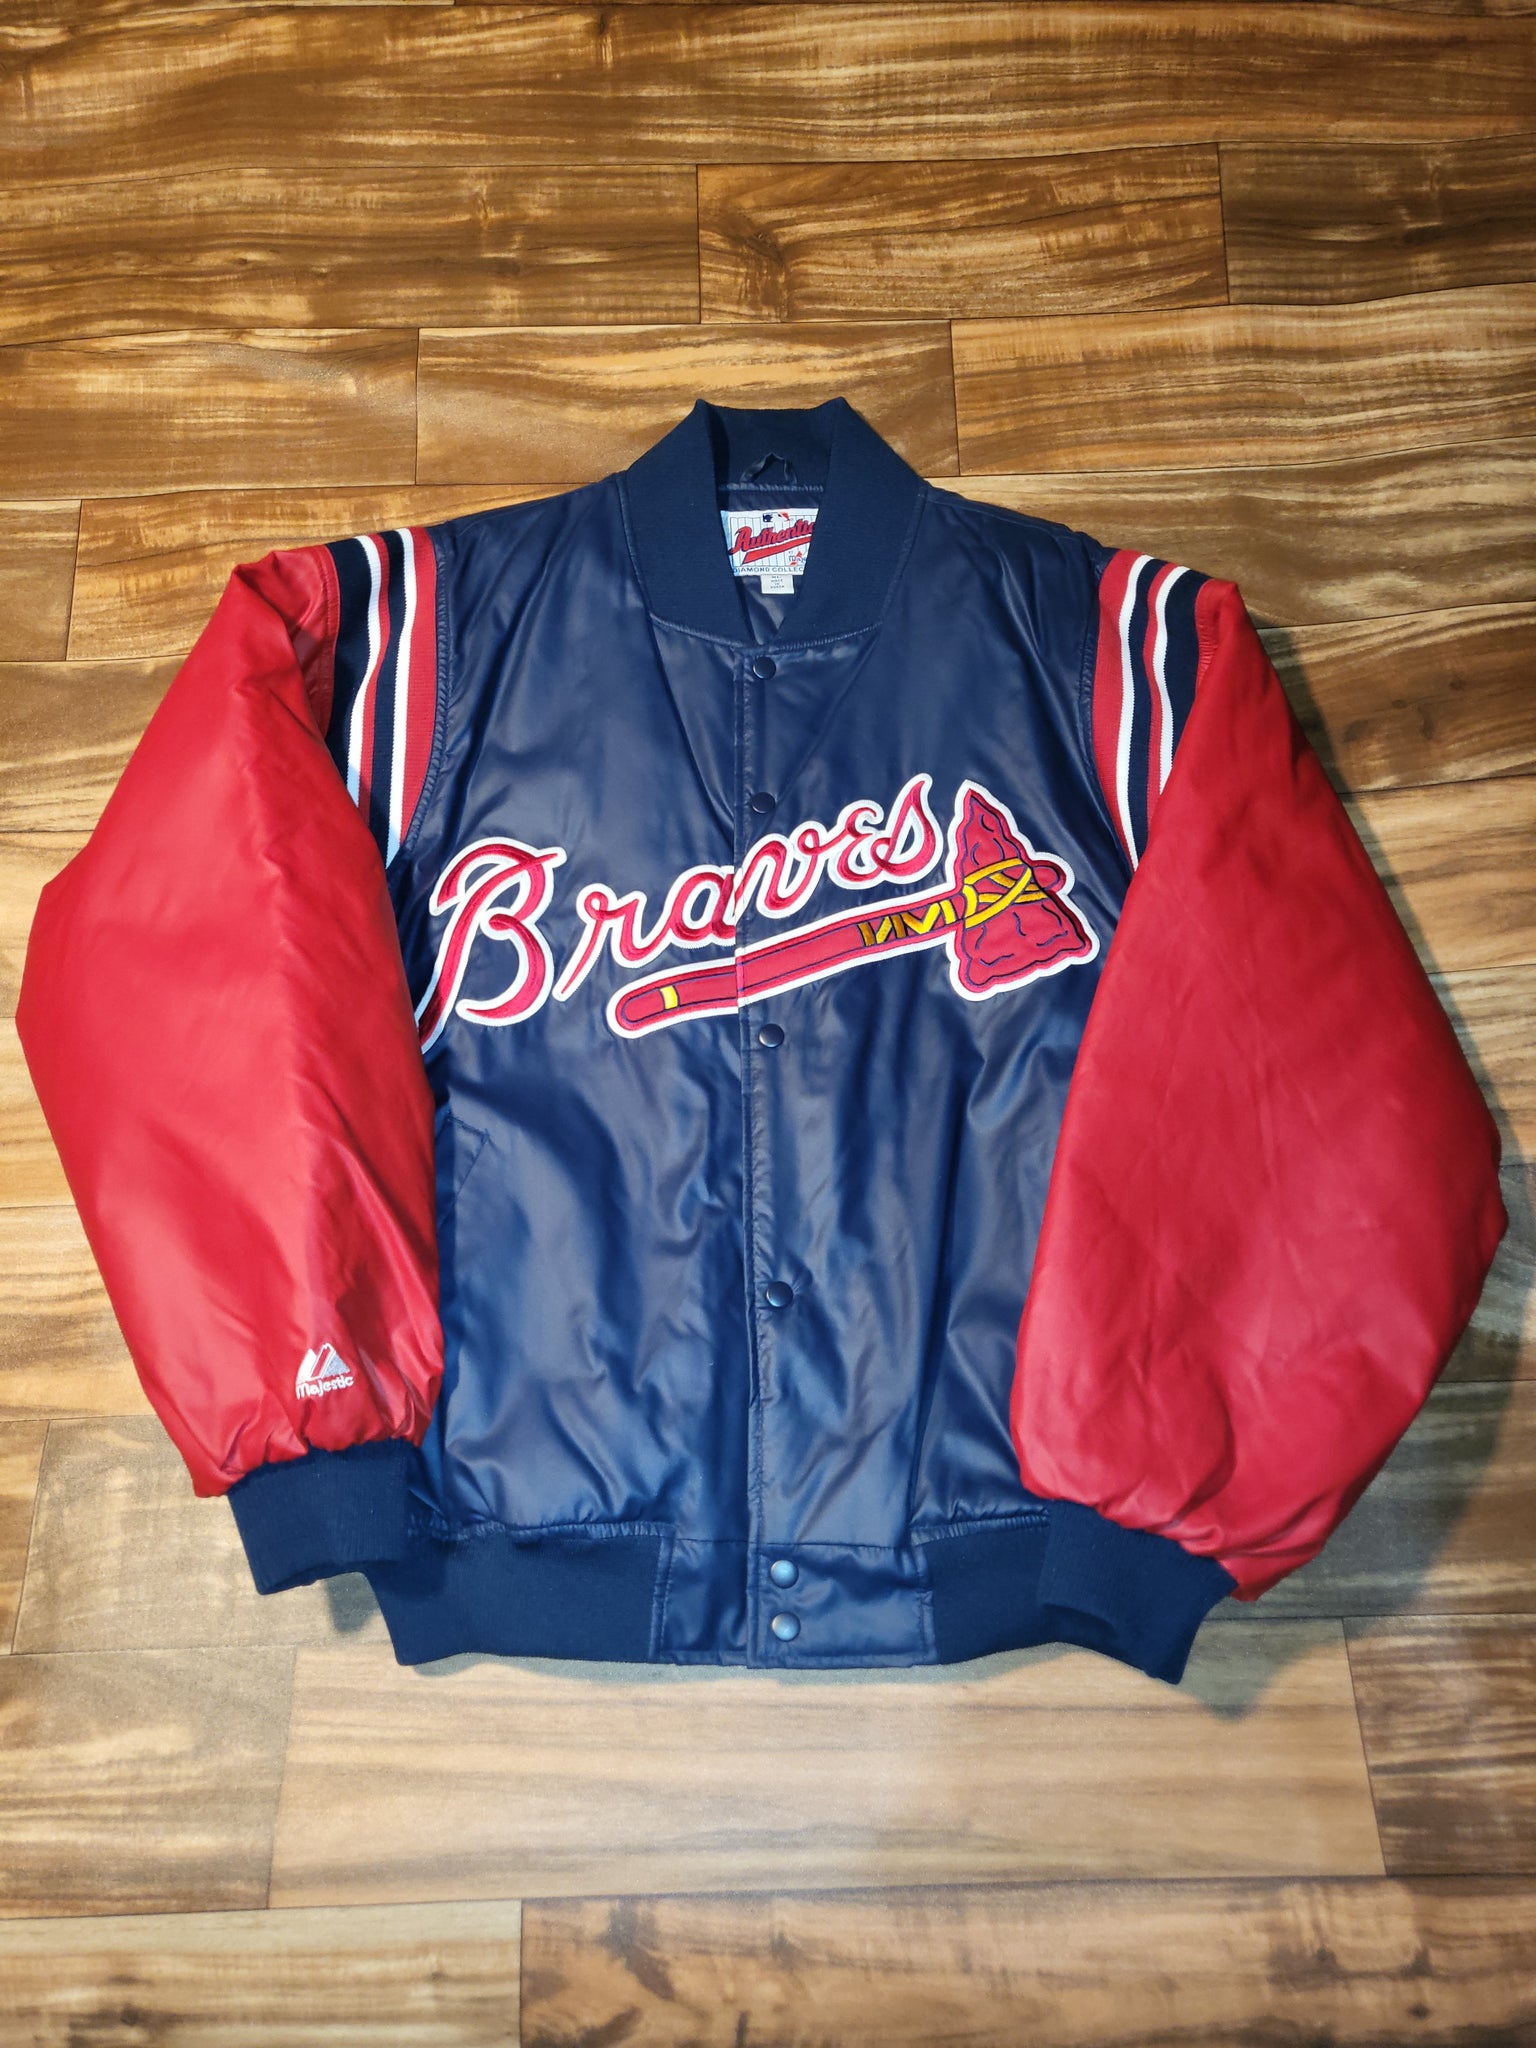 Atlanta Braves retro vintage